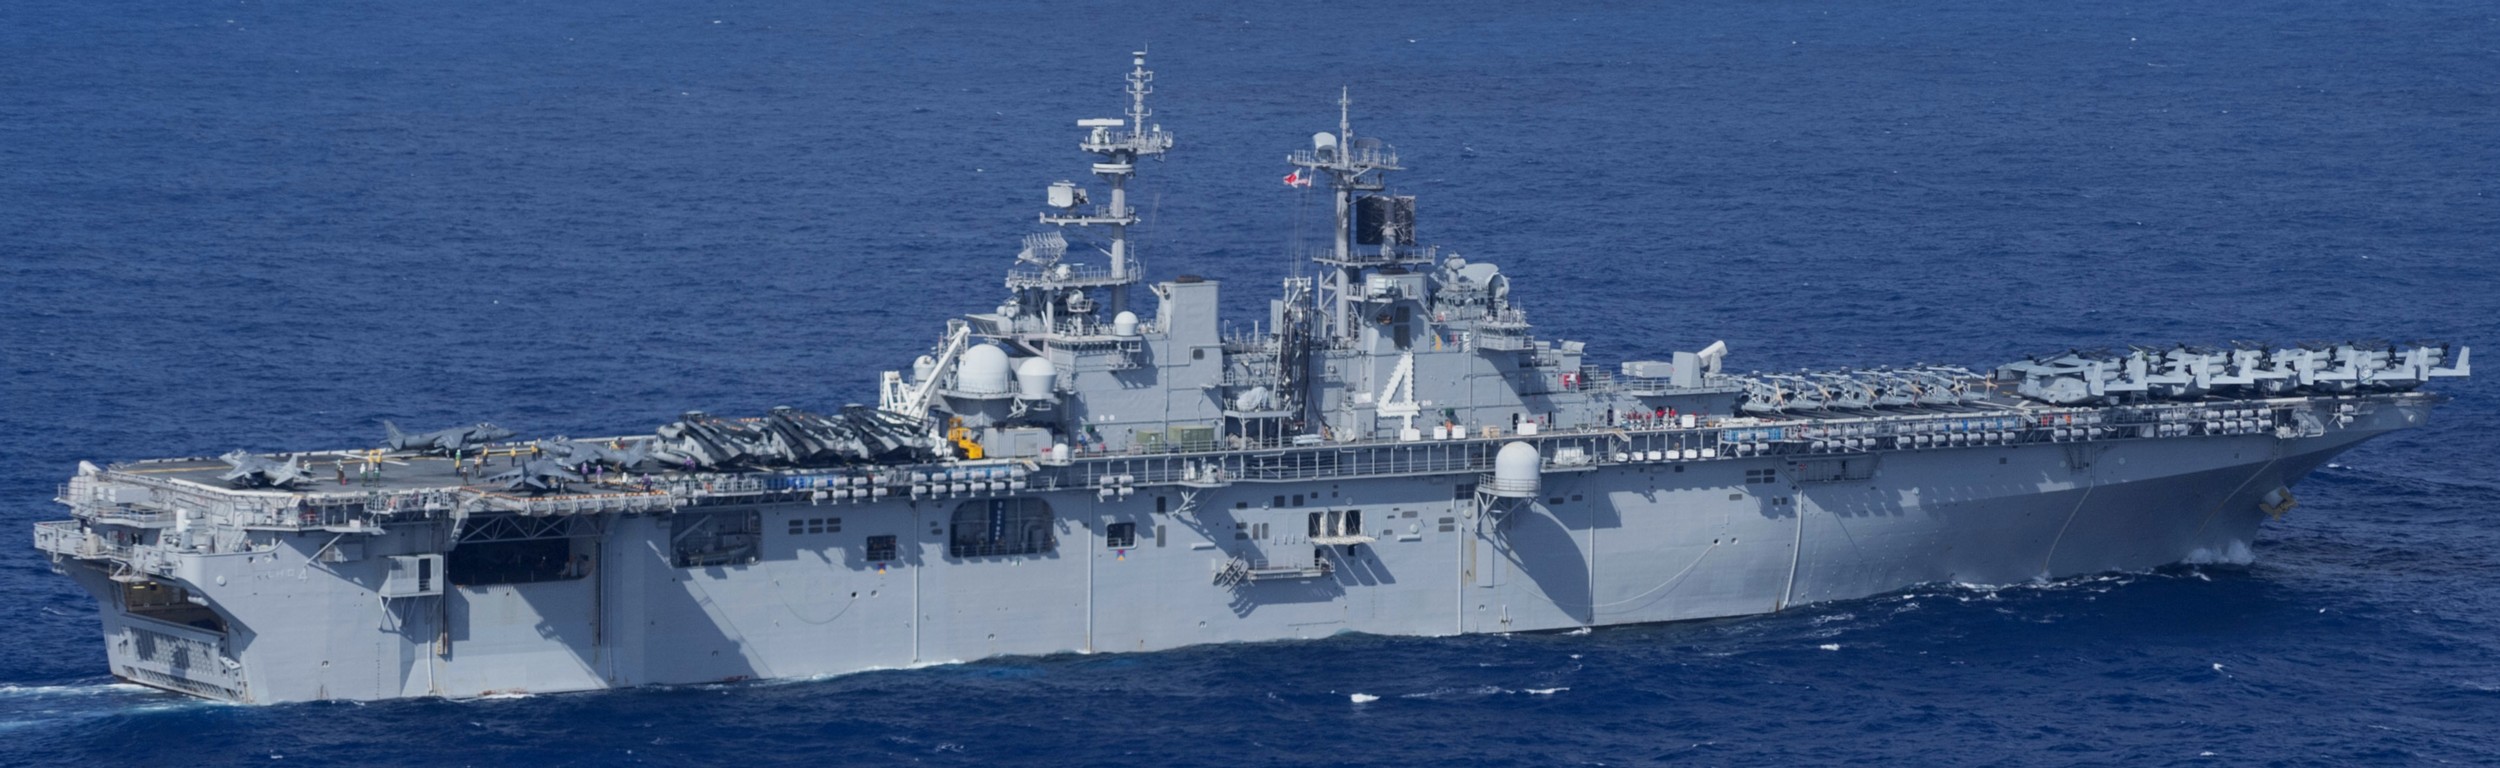 lhd-4 uss boxer wasp class amphibious assault ship dock landing us navy marines vmm-166 pacific ocean 106